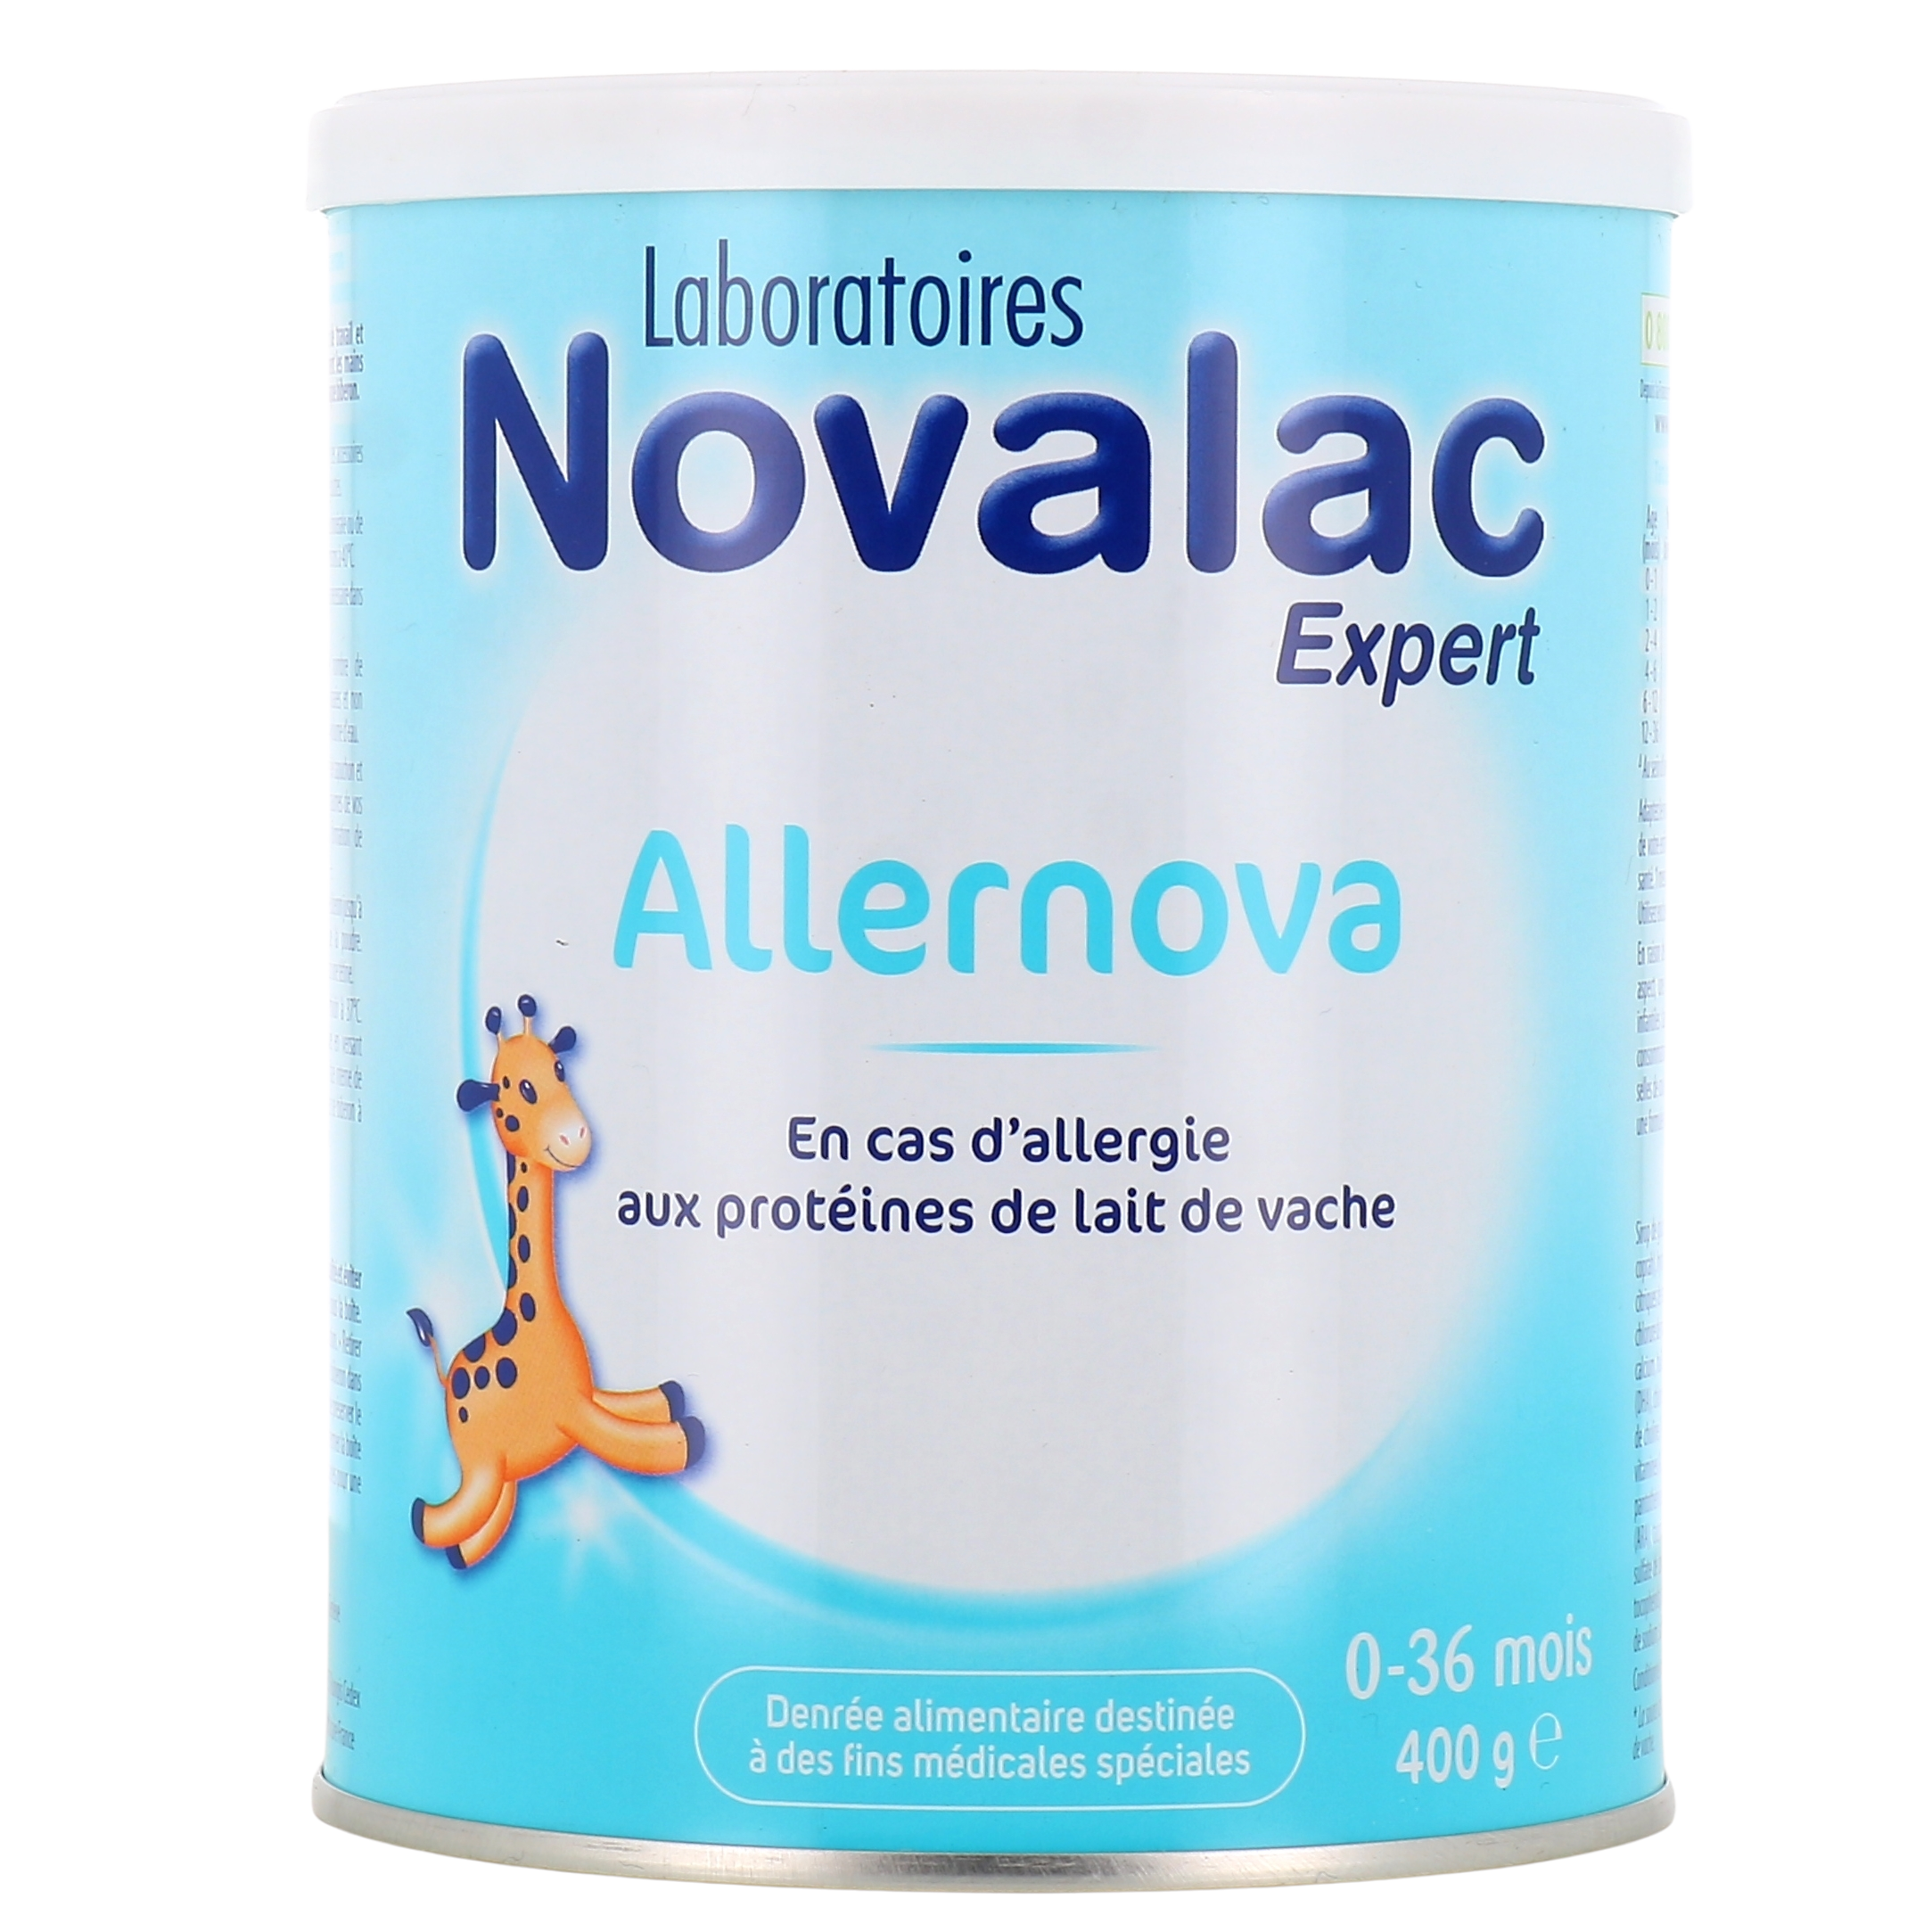 NOVALAC RIZ 0 - 36 mois, allergies, lait en poudre bébé